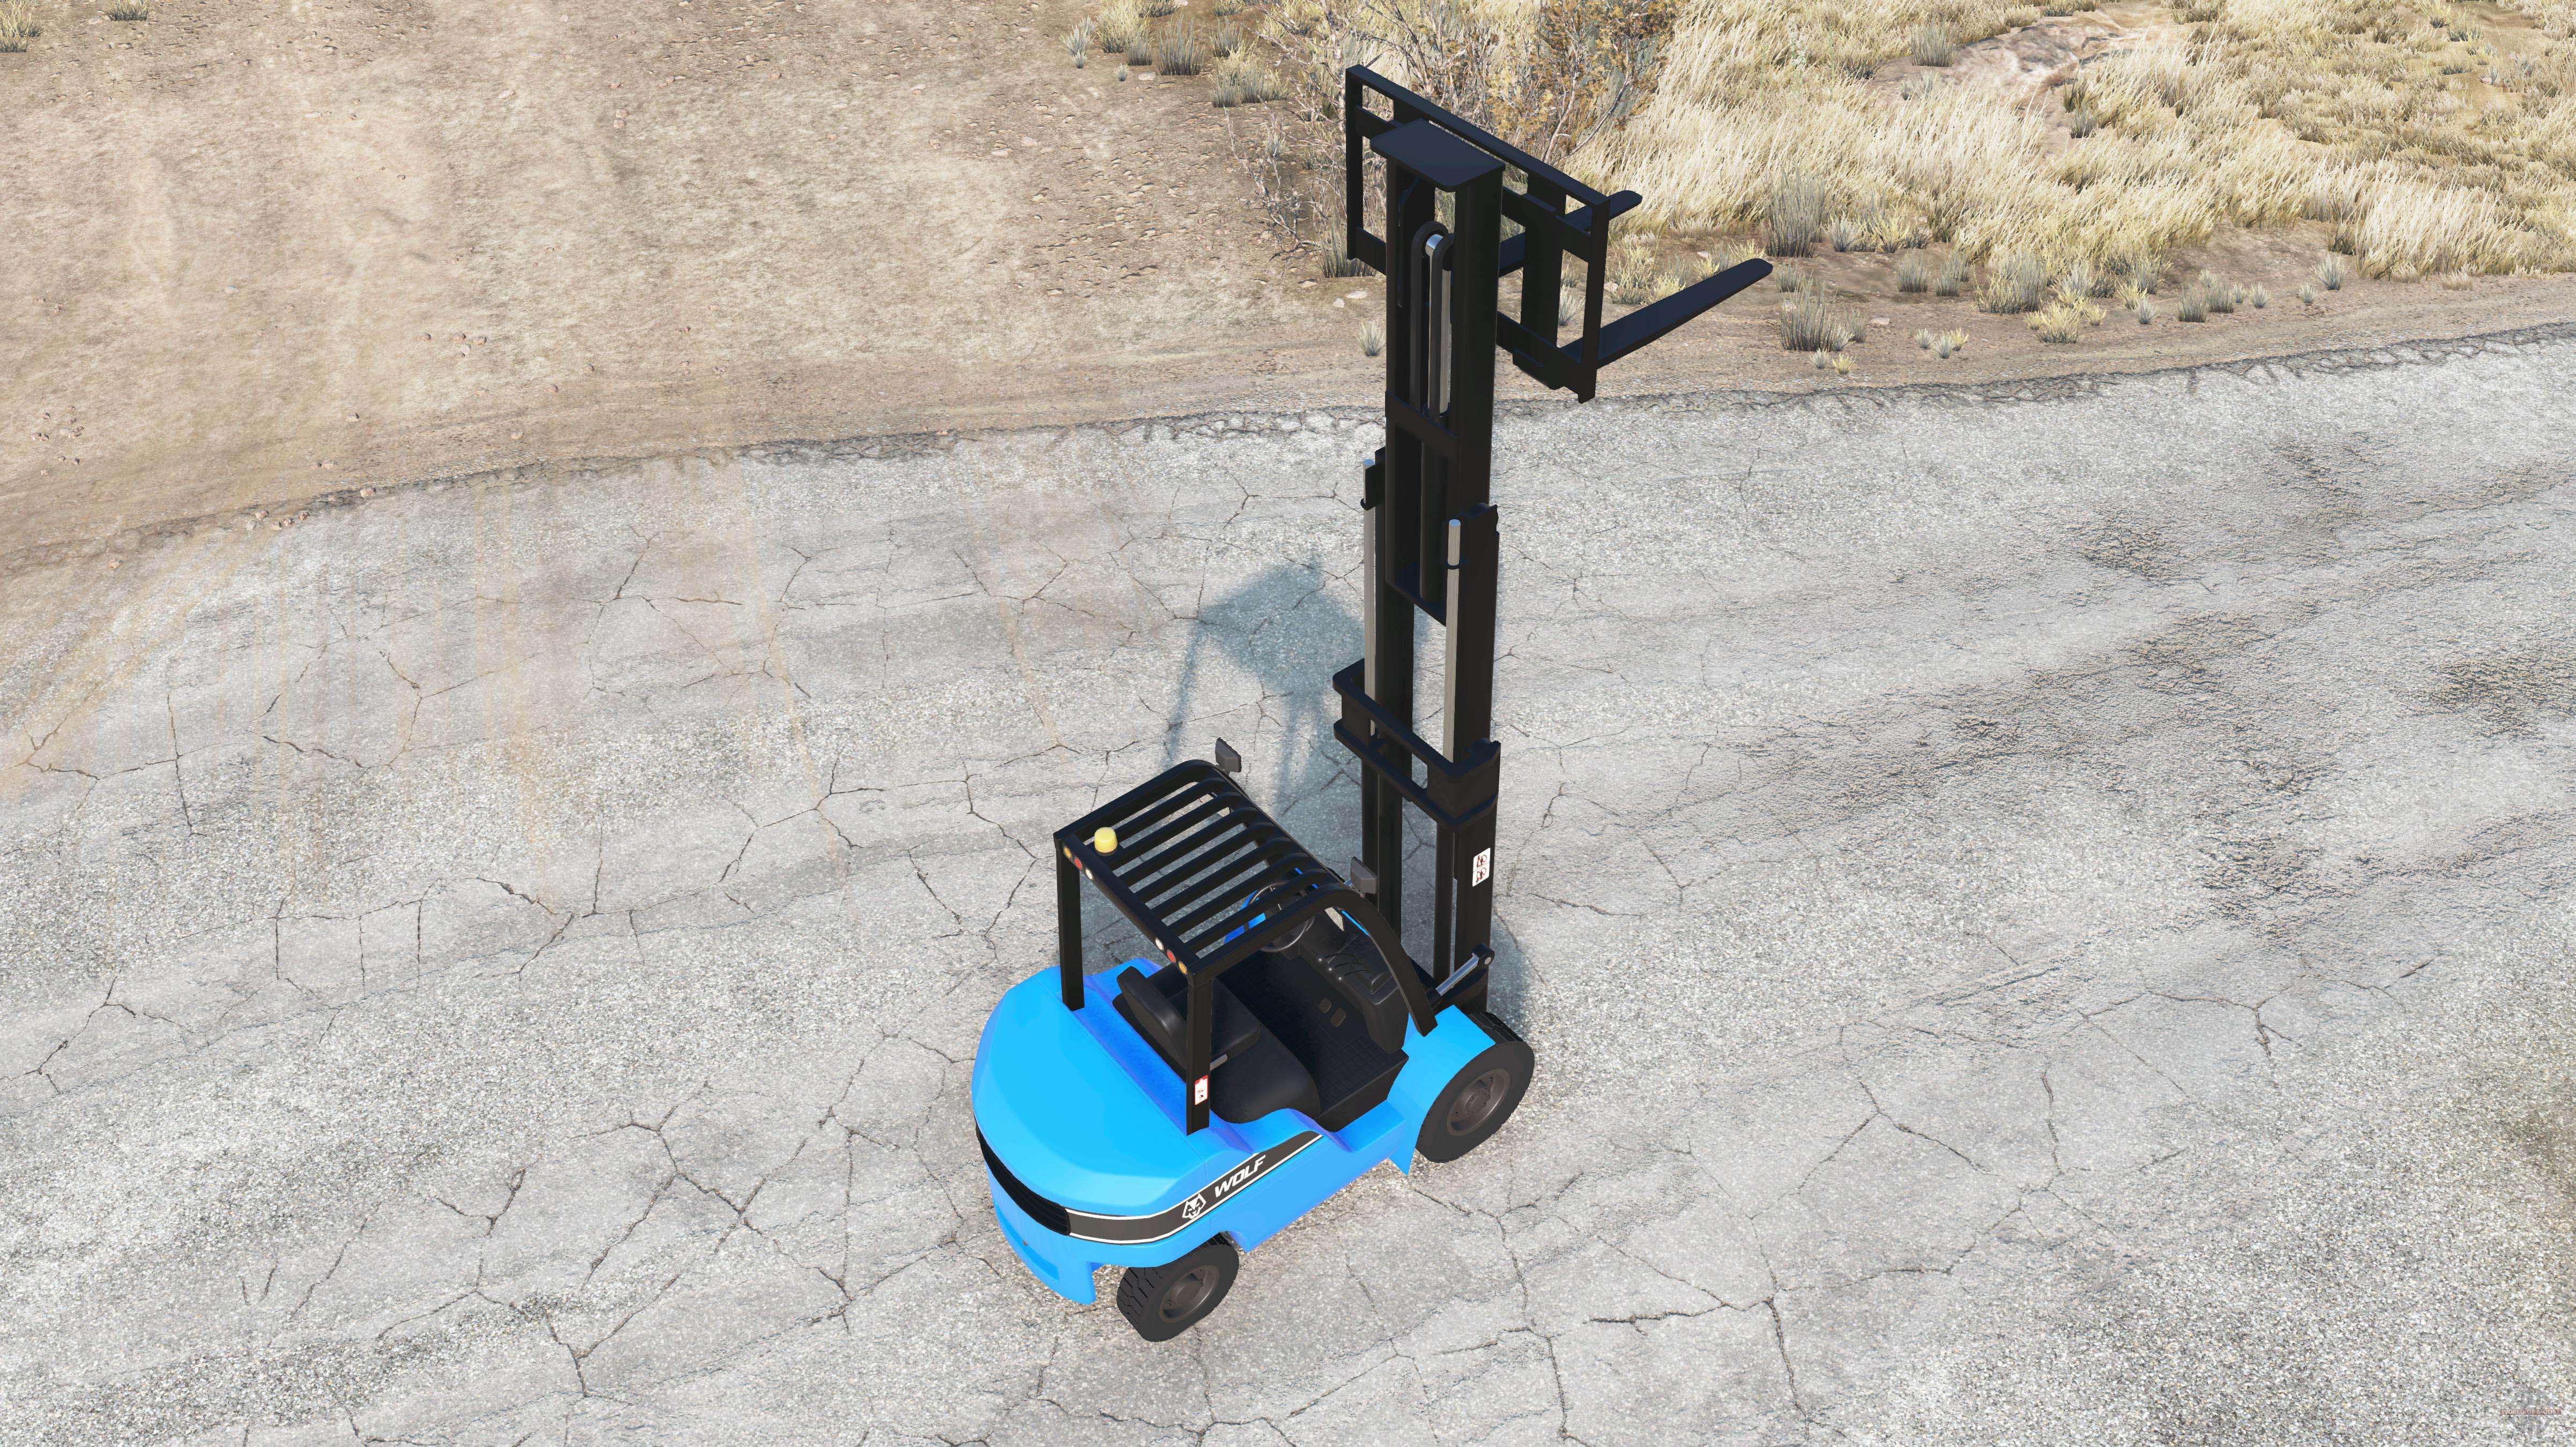 Forklift v1.3 for BeamNG Drive